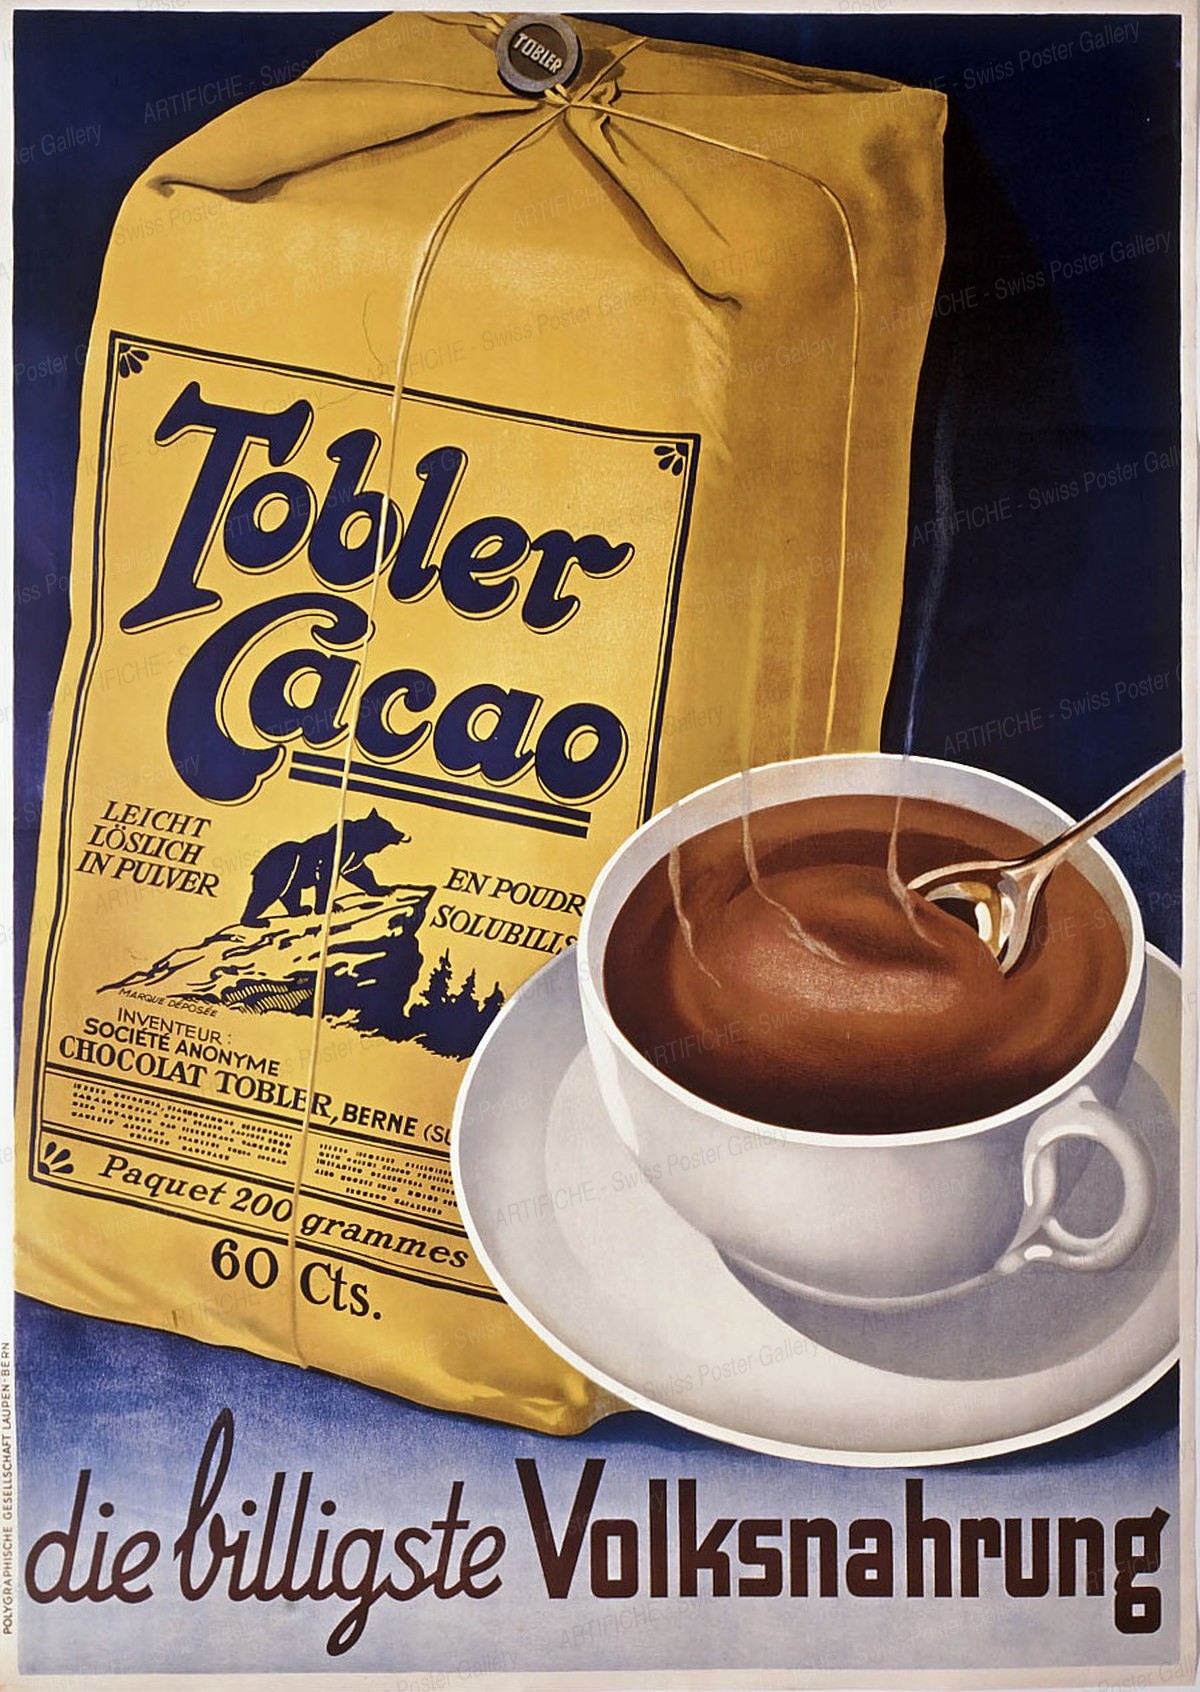 Tobler Cocoa, Artist unknown